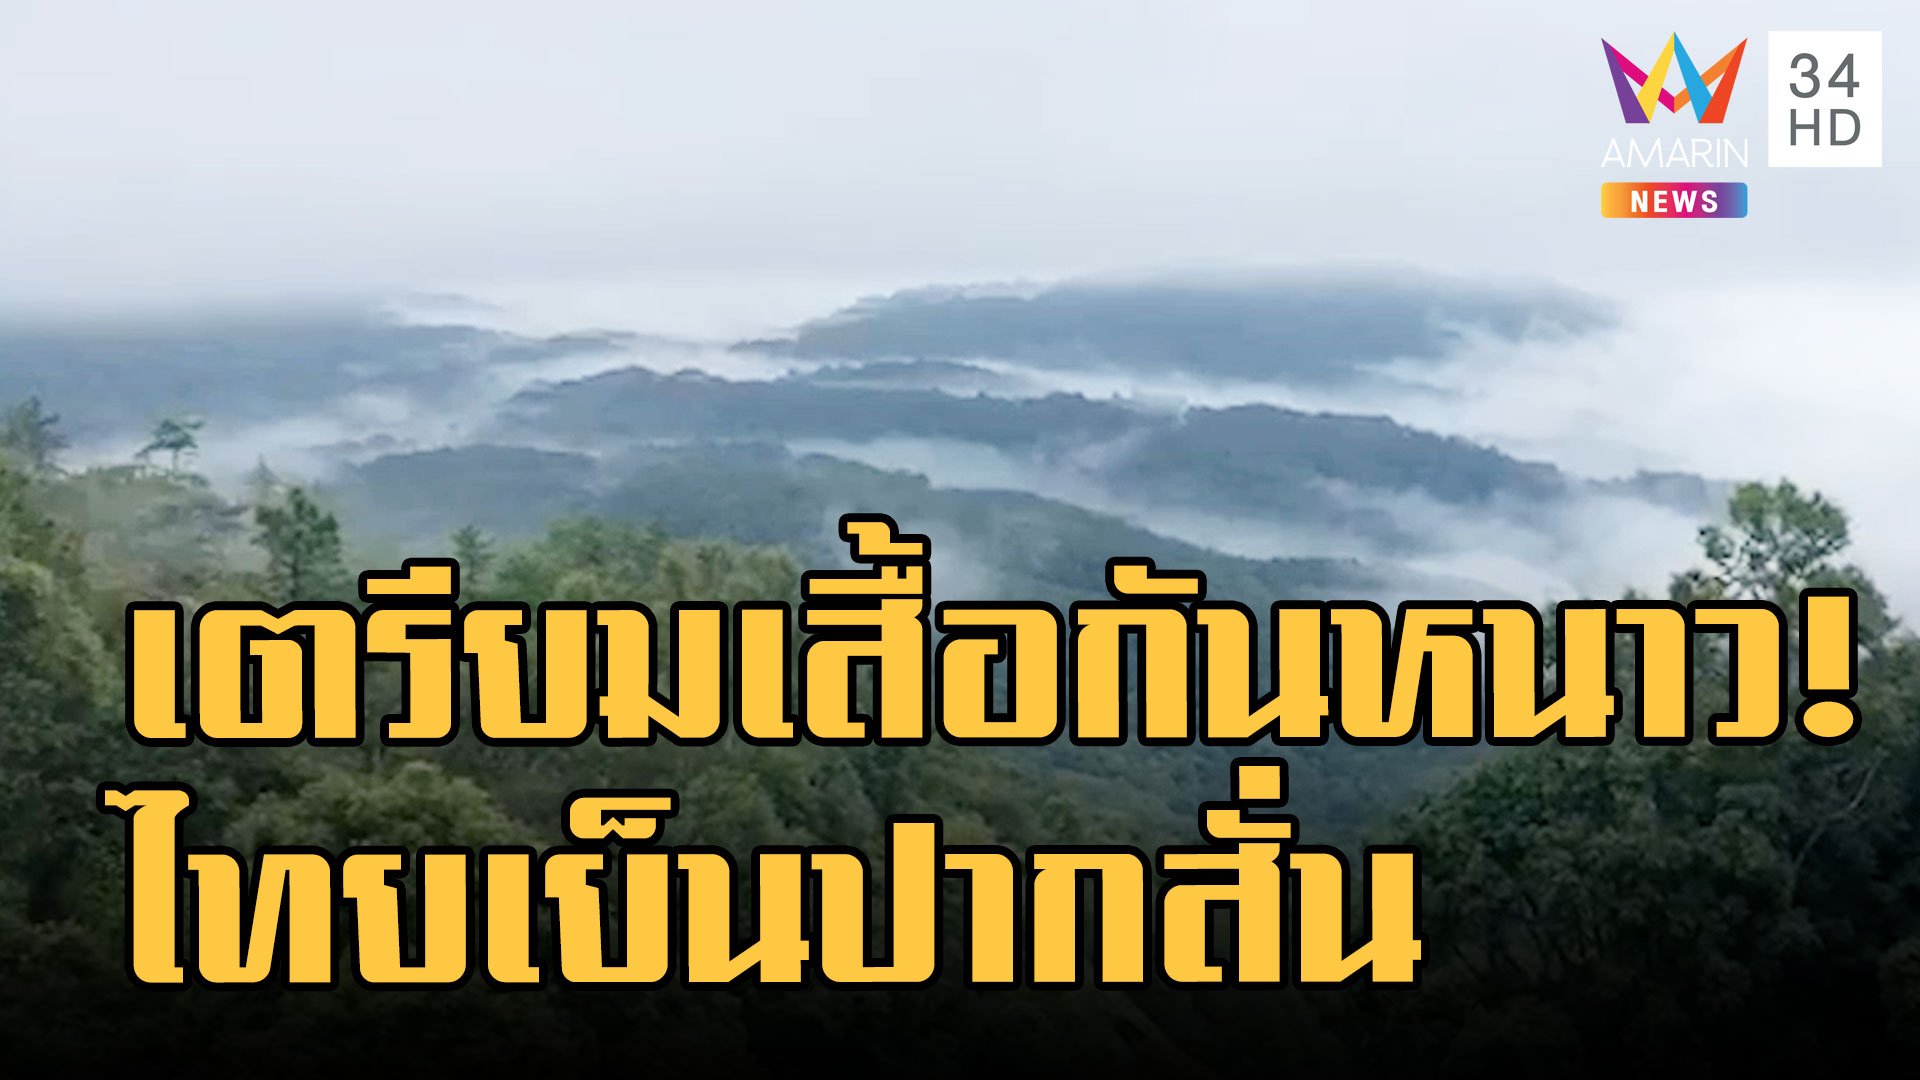 กรมอุตุฯ เผยแล้วทั่วไทยเตรียมหนาวปากสั่น กทม.แตะ 18 องศา อีสาน 8 องศา | ข่าวอรุณอมรินทร์ | 9 ธ.ค. 65 | AMARIN TVHD34